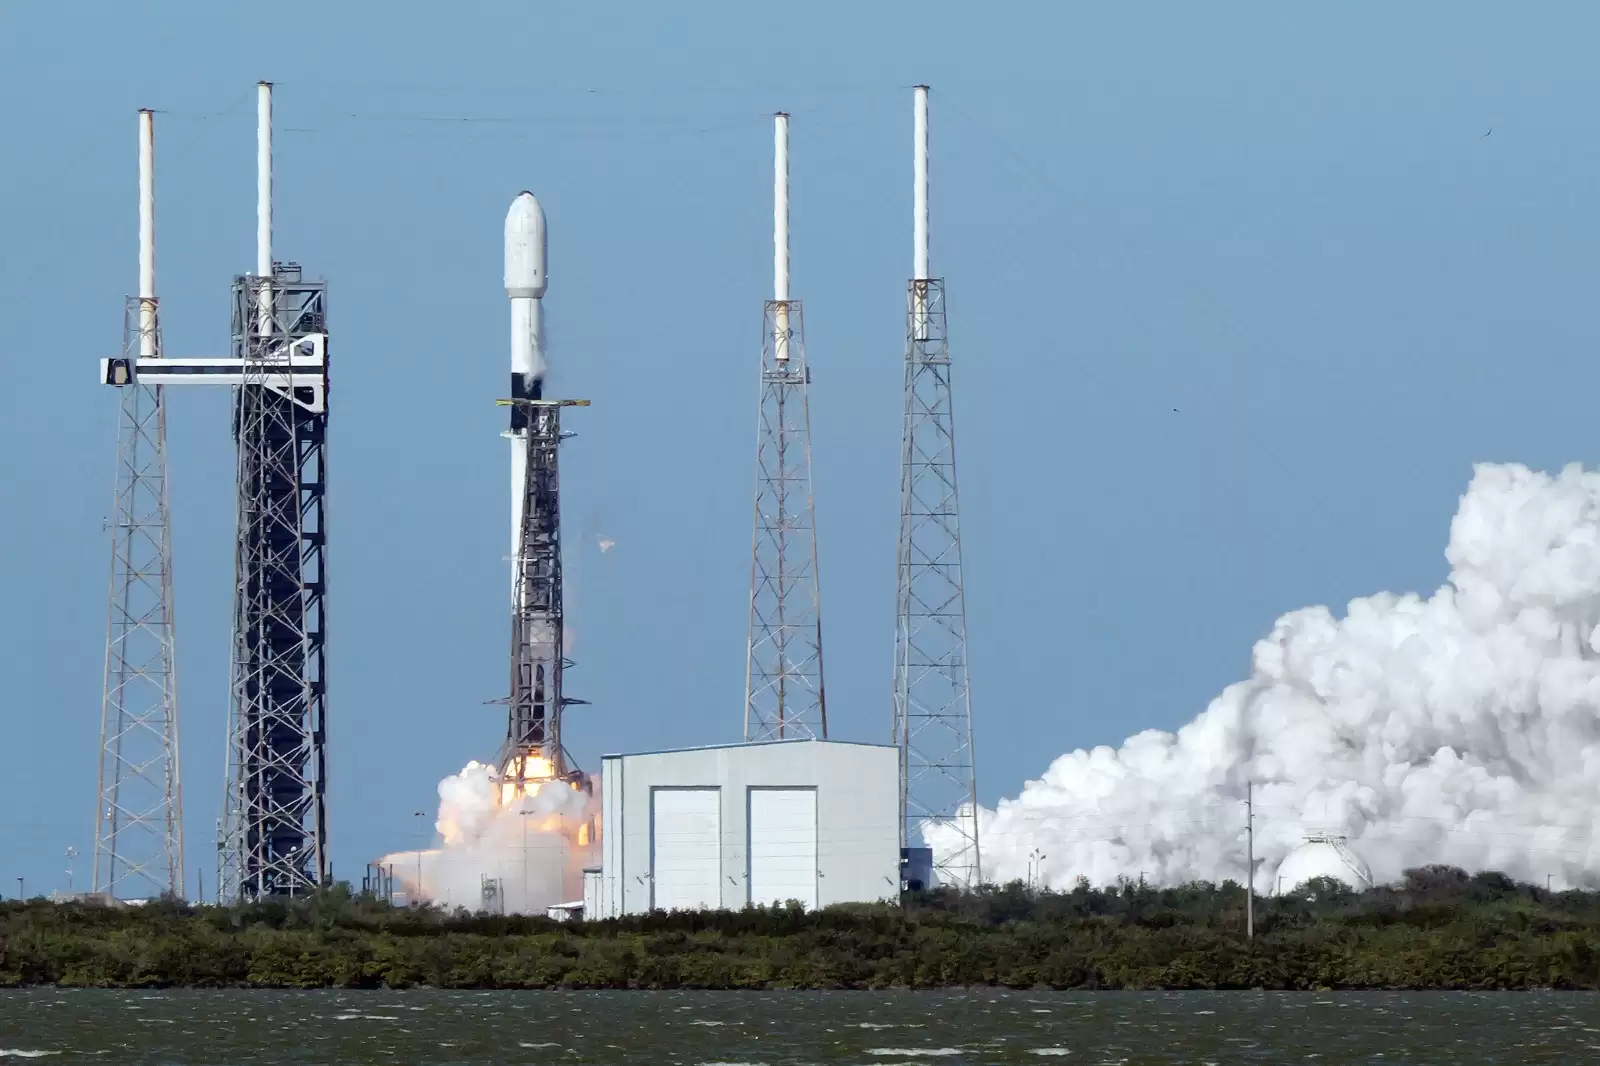 Roket Falcon 9 yang meluncur dari Cape Canaveral Florida mengantarkan Satelit Merah Putih 2 menuju orbit, Selasa (20/2) (Foto: Telkom Group)